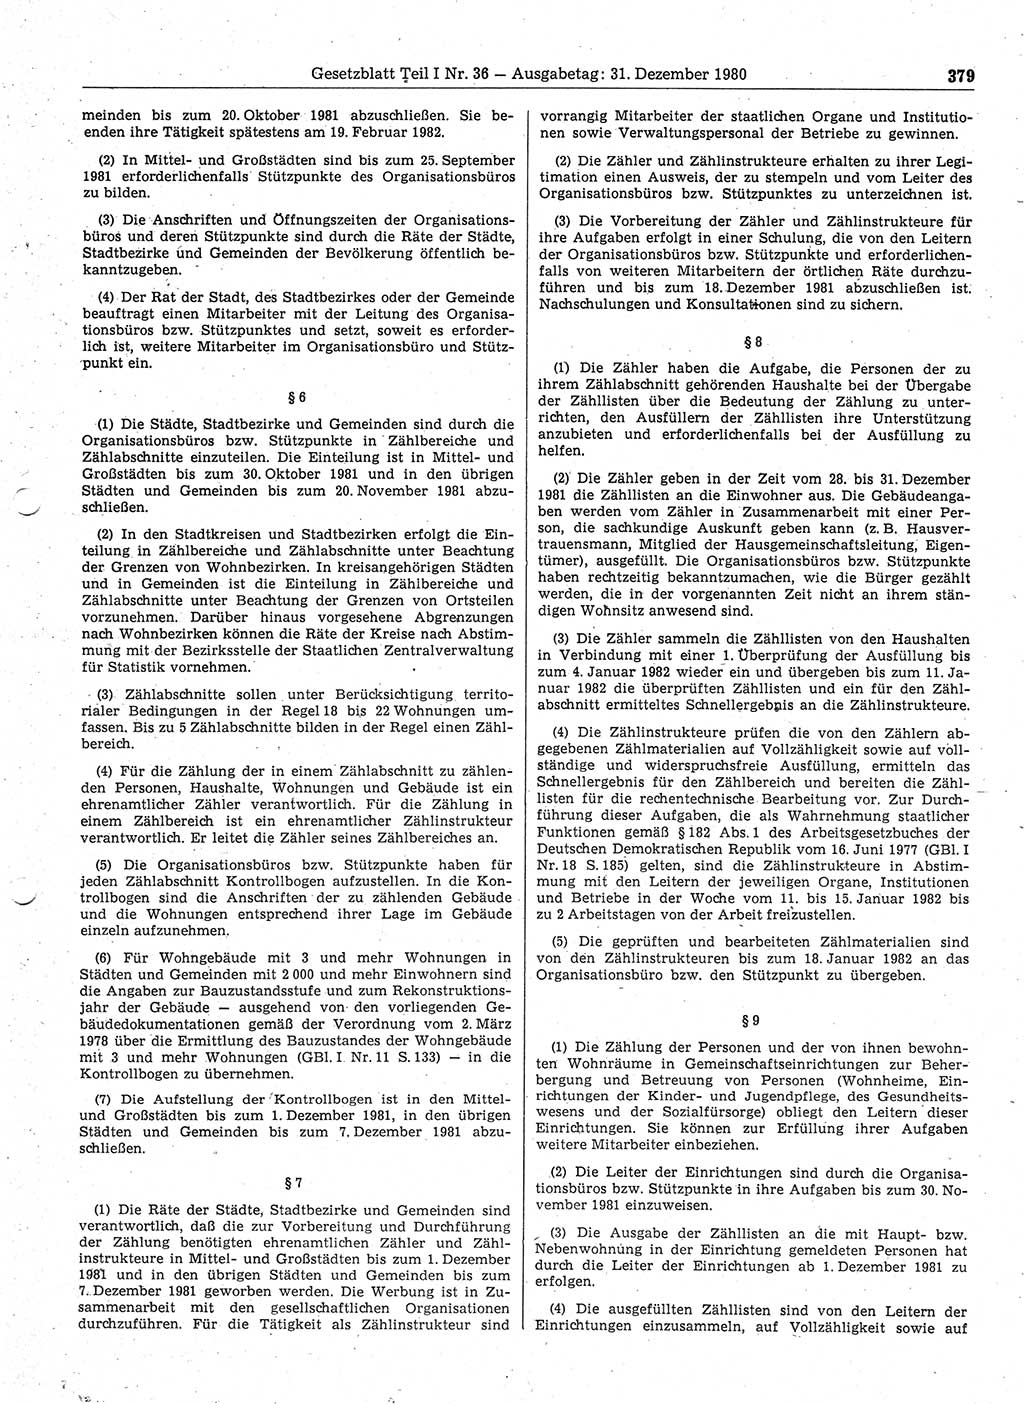 Gesetzblatt (GBl.) der Deutschen Demokratischen Republik (DDR) Teil Ⅰ 1980, Seite 379 (GBl. DDR Ⅰ 1980, S. 379)